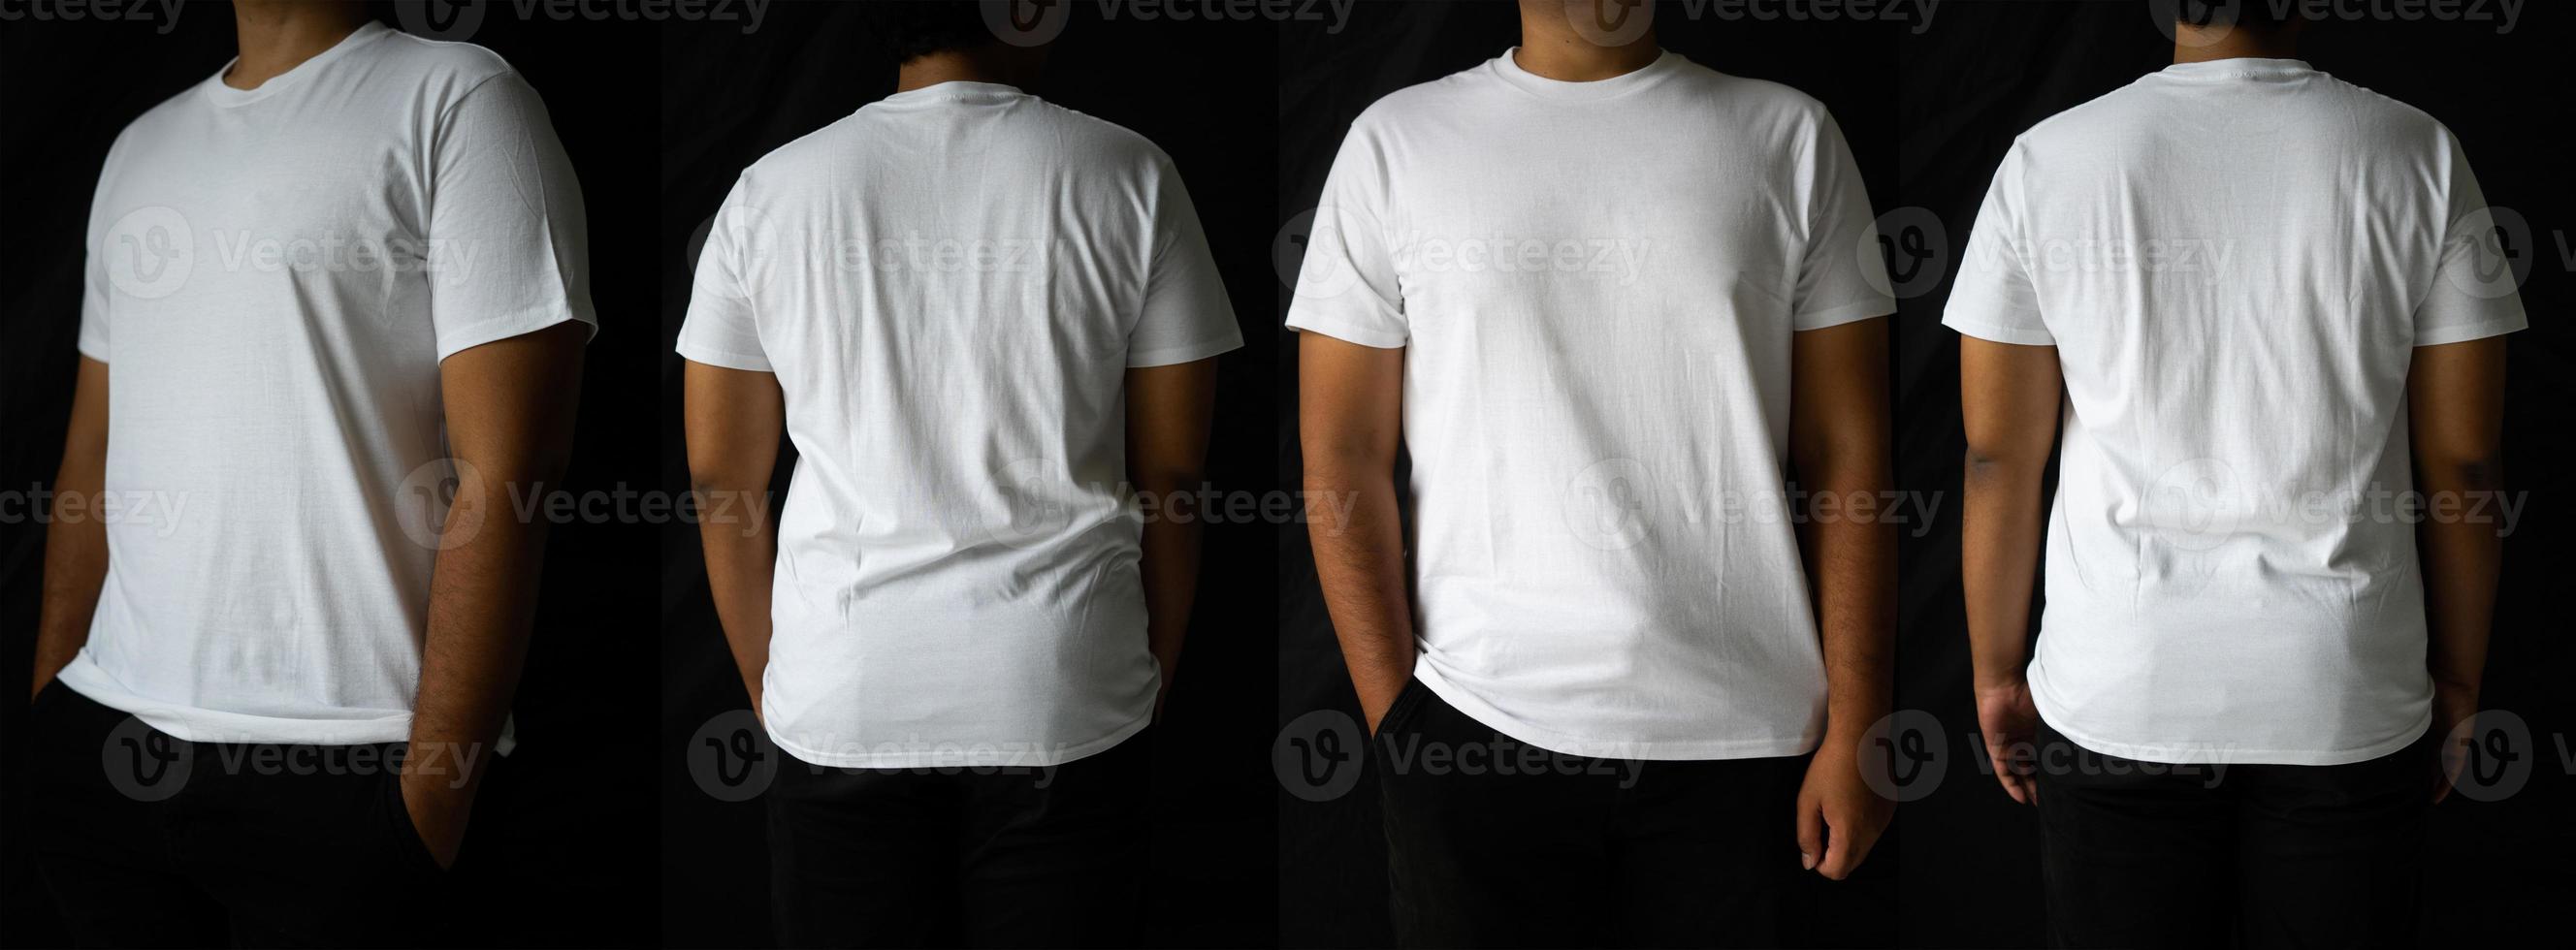 homens elegantes usam camisetas simples para maquetes. o design de camiseta em branco é exibido nas partes traseira e frontal. foto